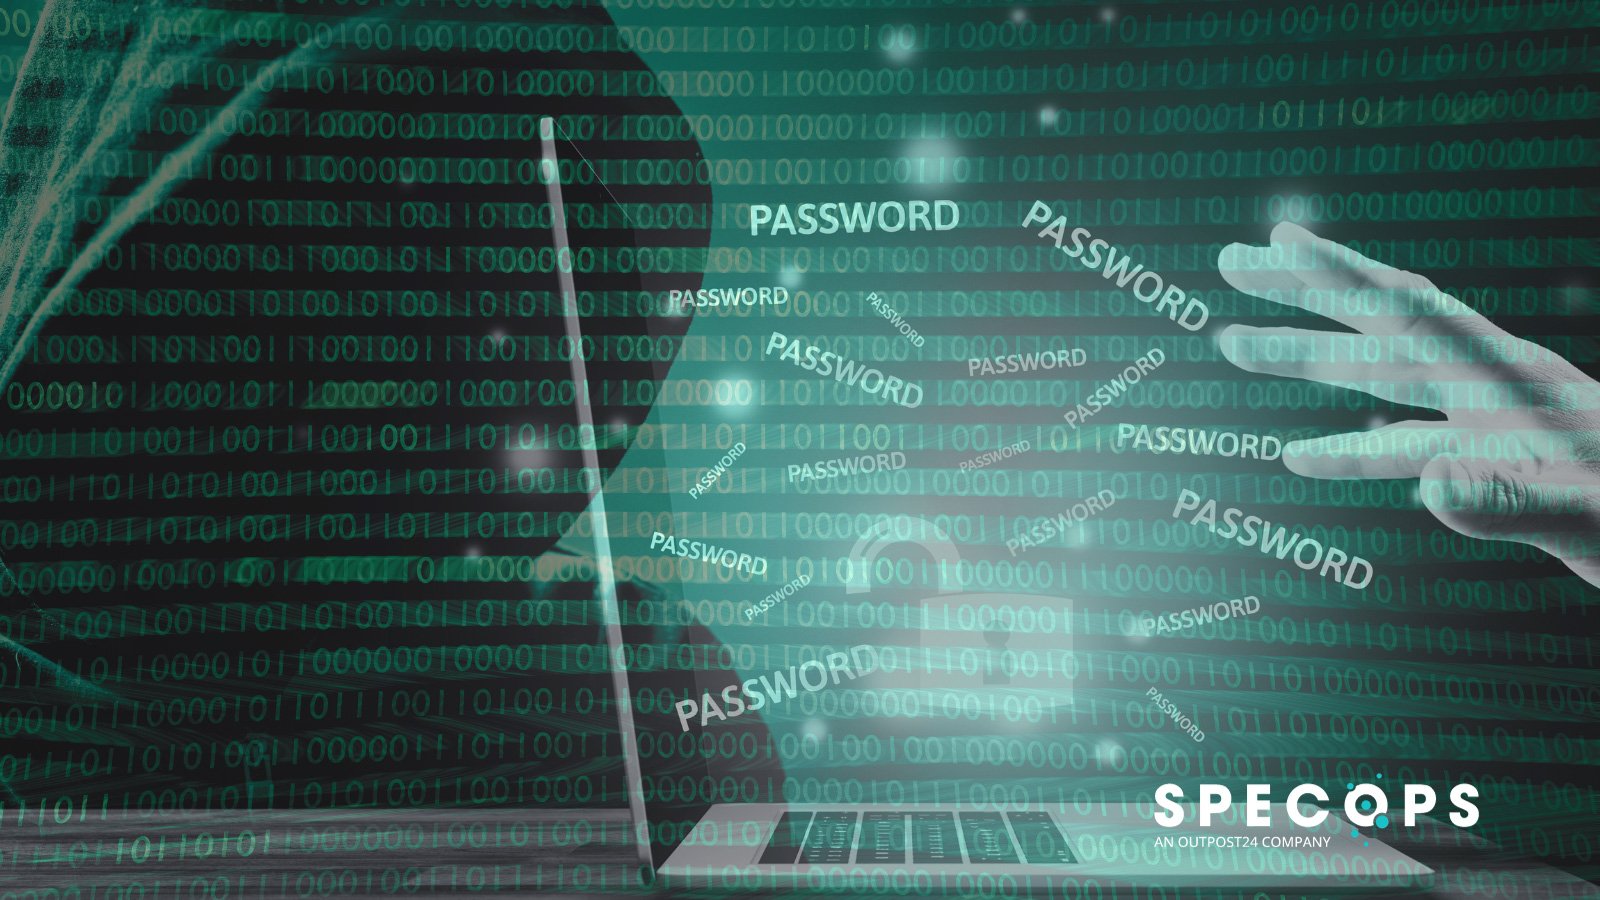 Specops passwords